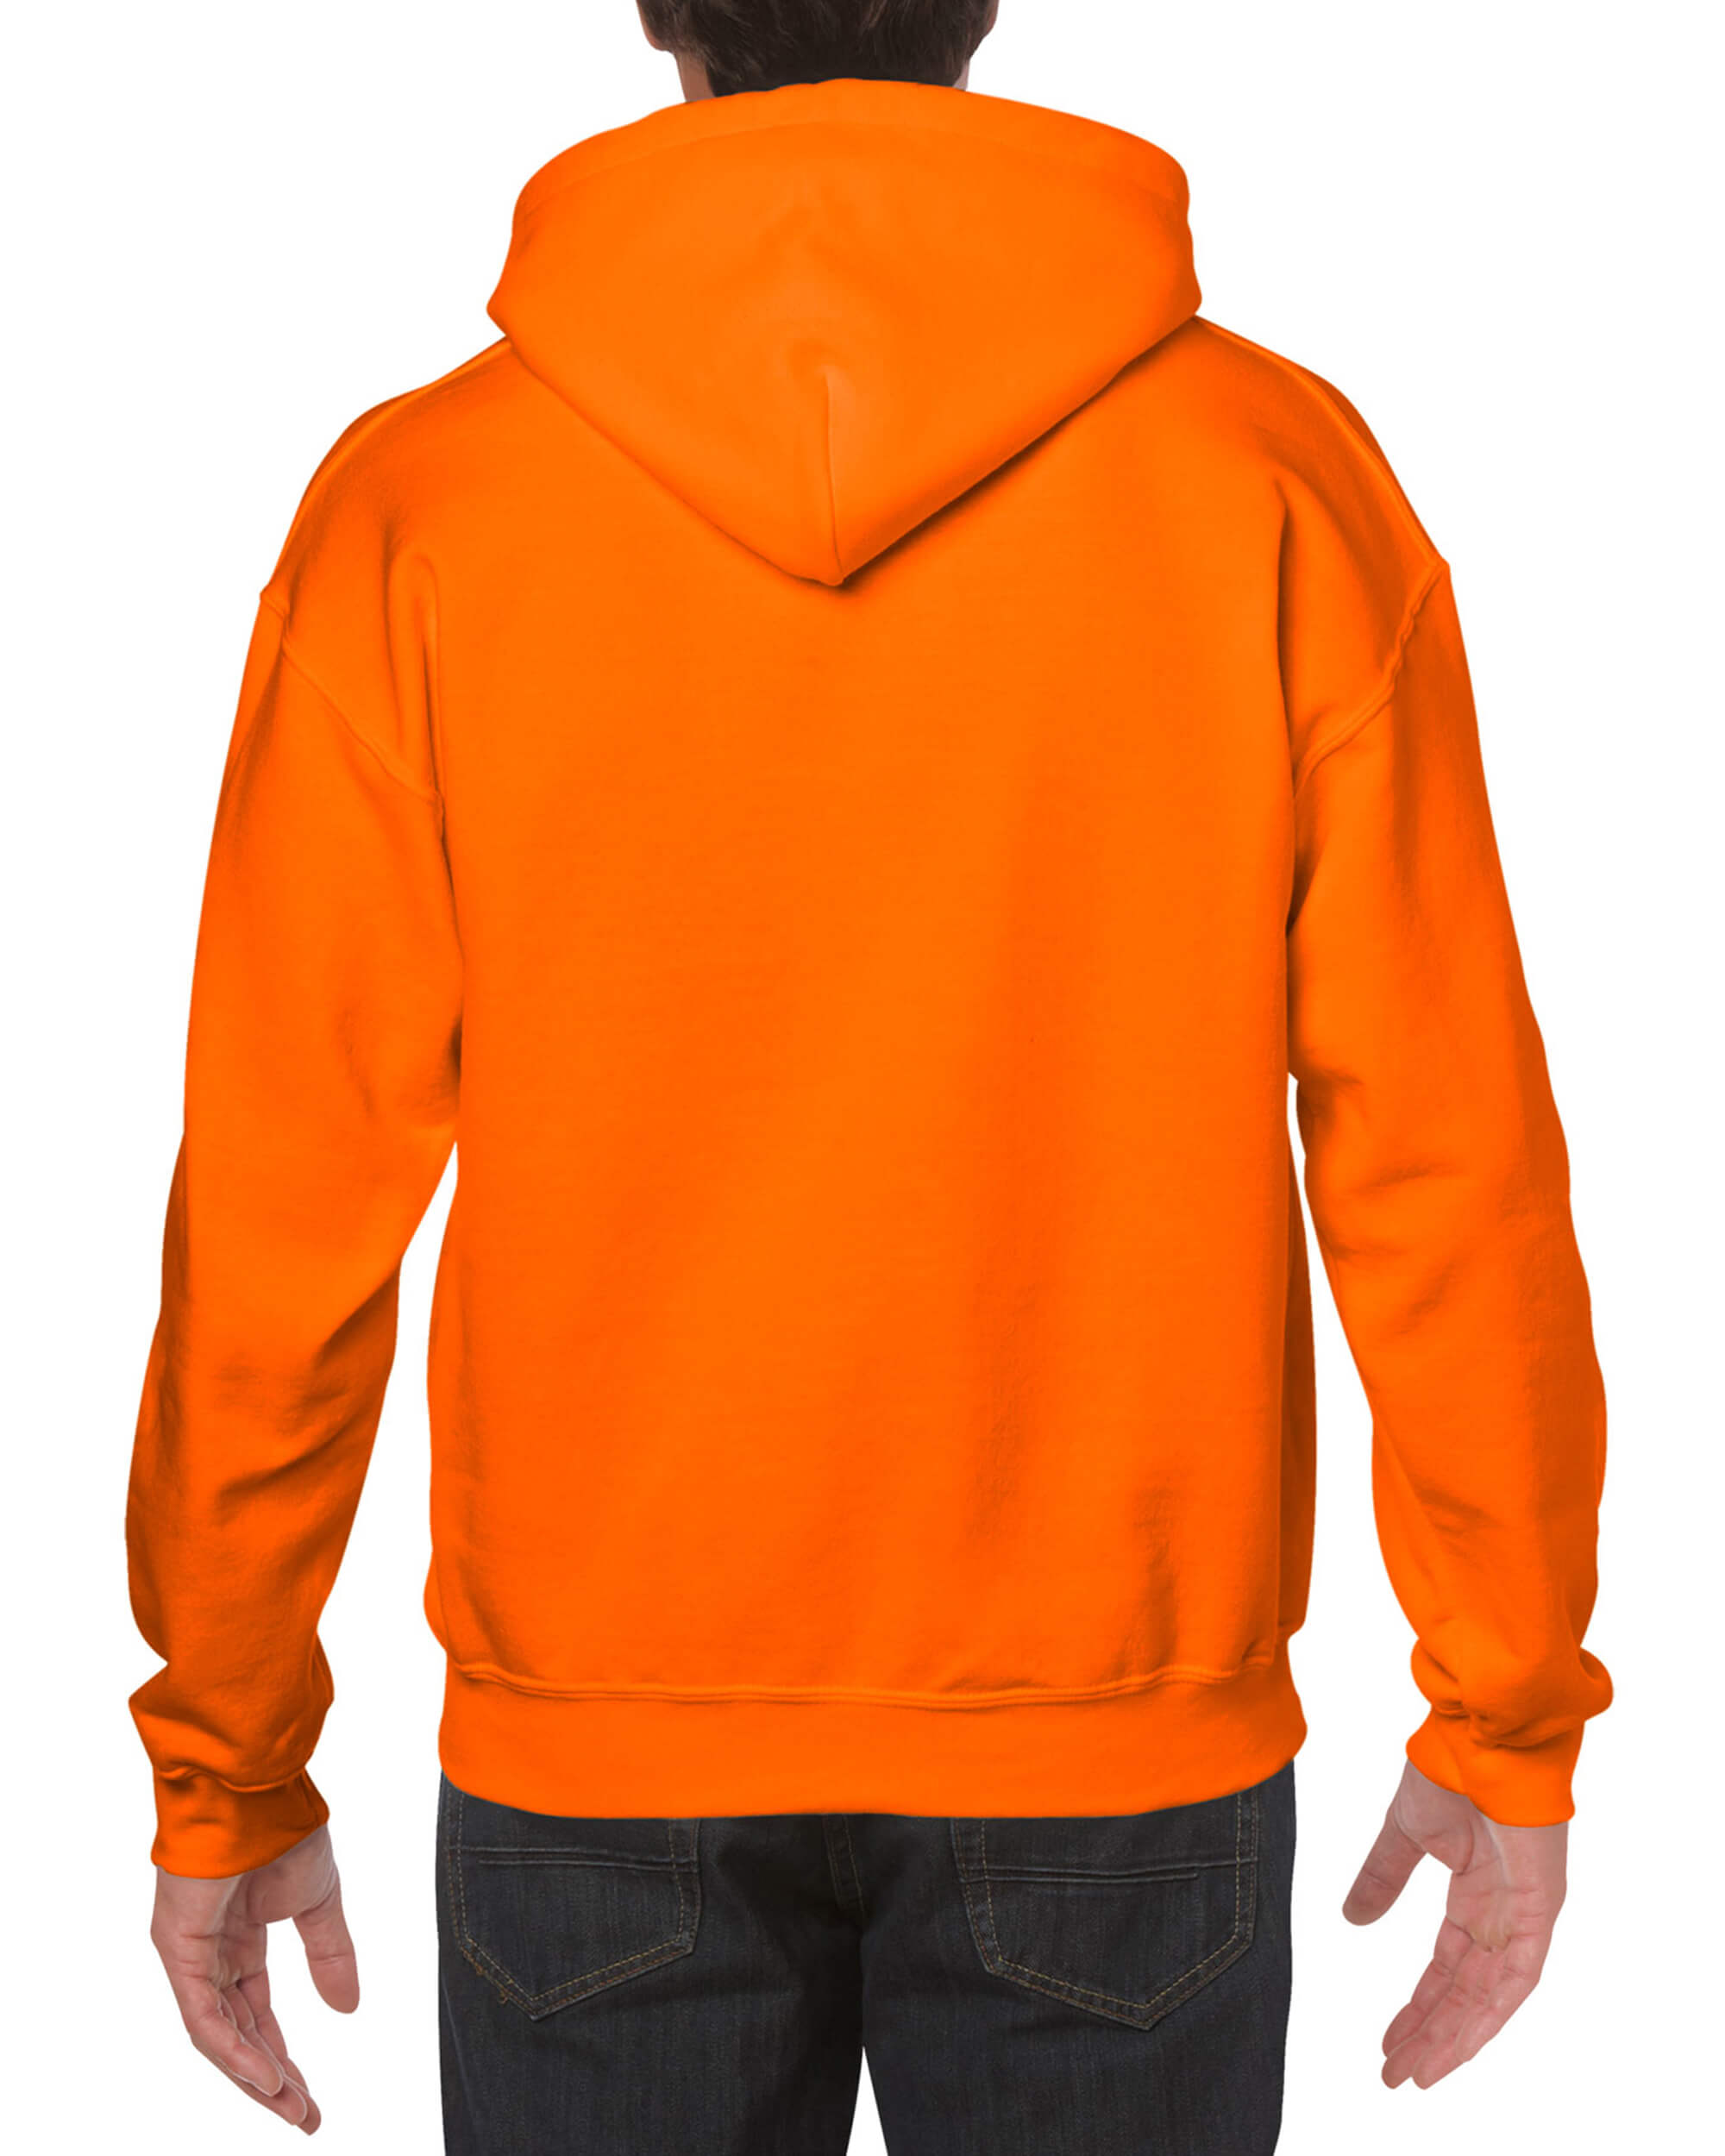 Pullover Hoodie - Safety Orange